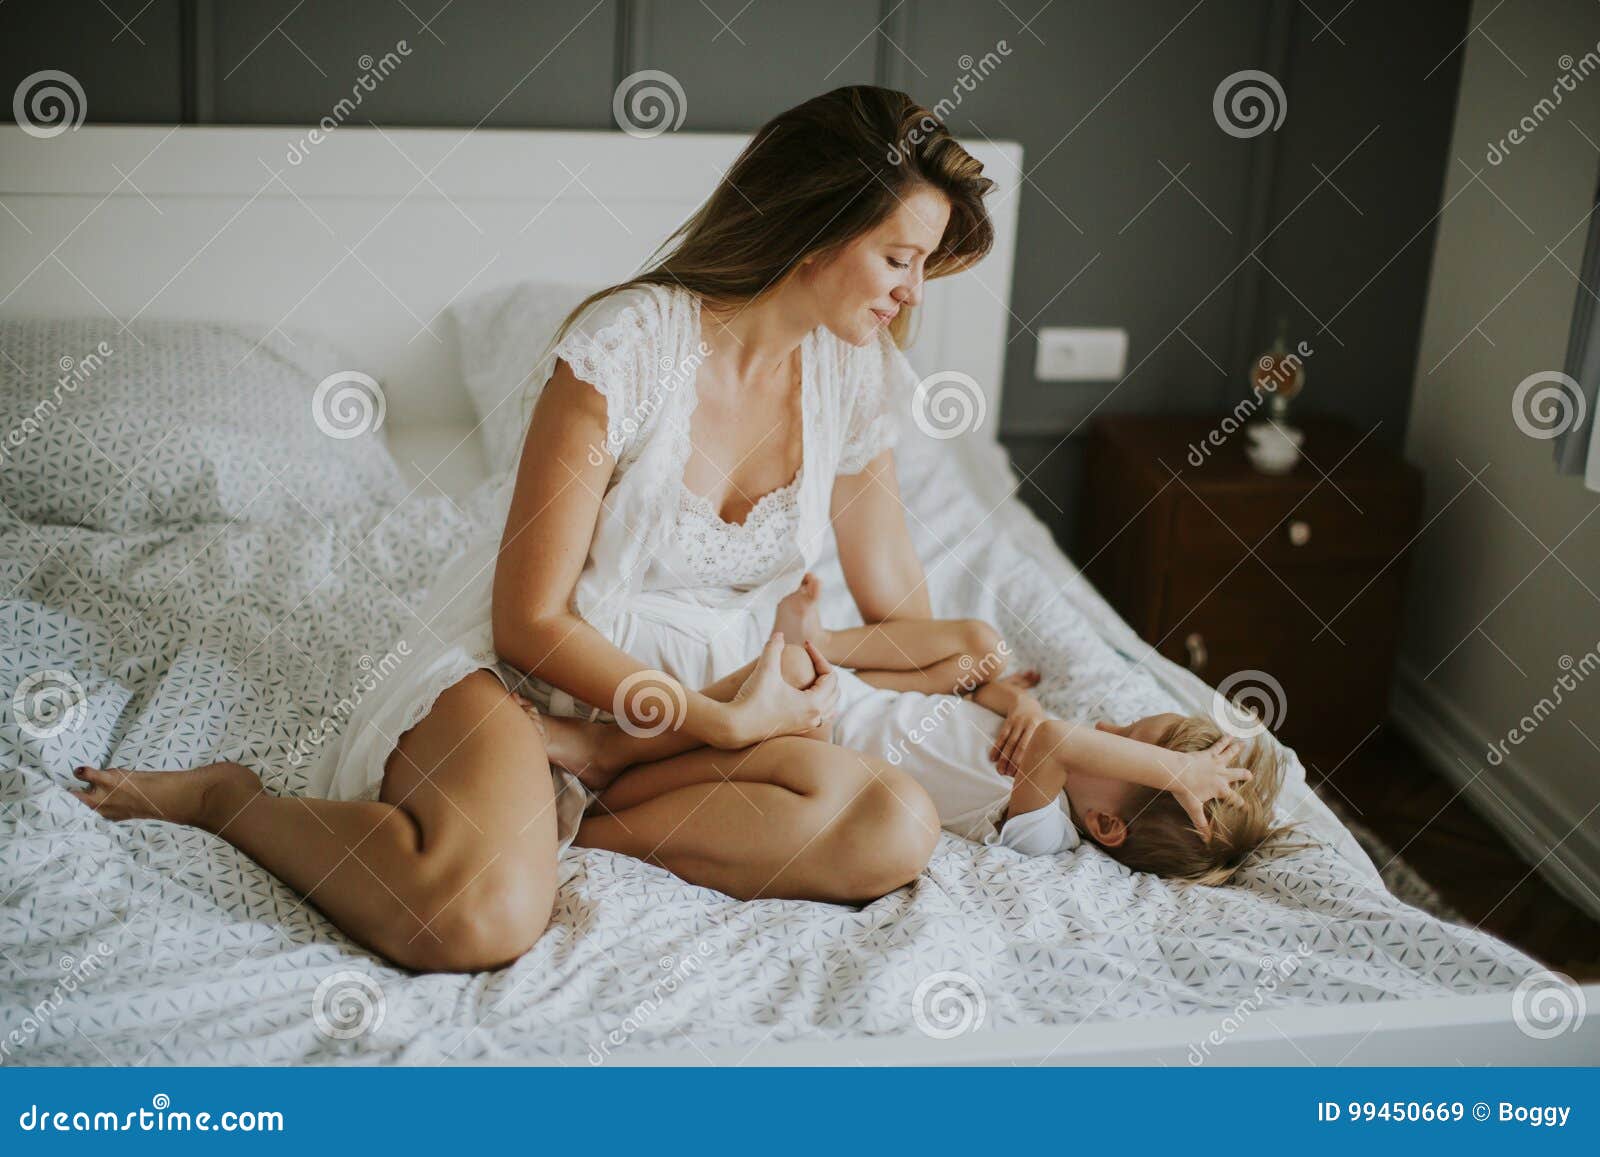 Сильно возбужденные мамы. Молодые мамы в постели. Мать у кровати. Мамочки на кровати. Женщина и мальчик в постели.